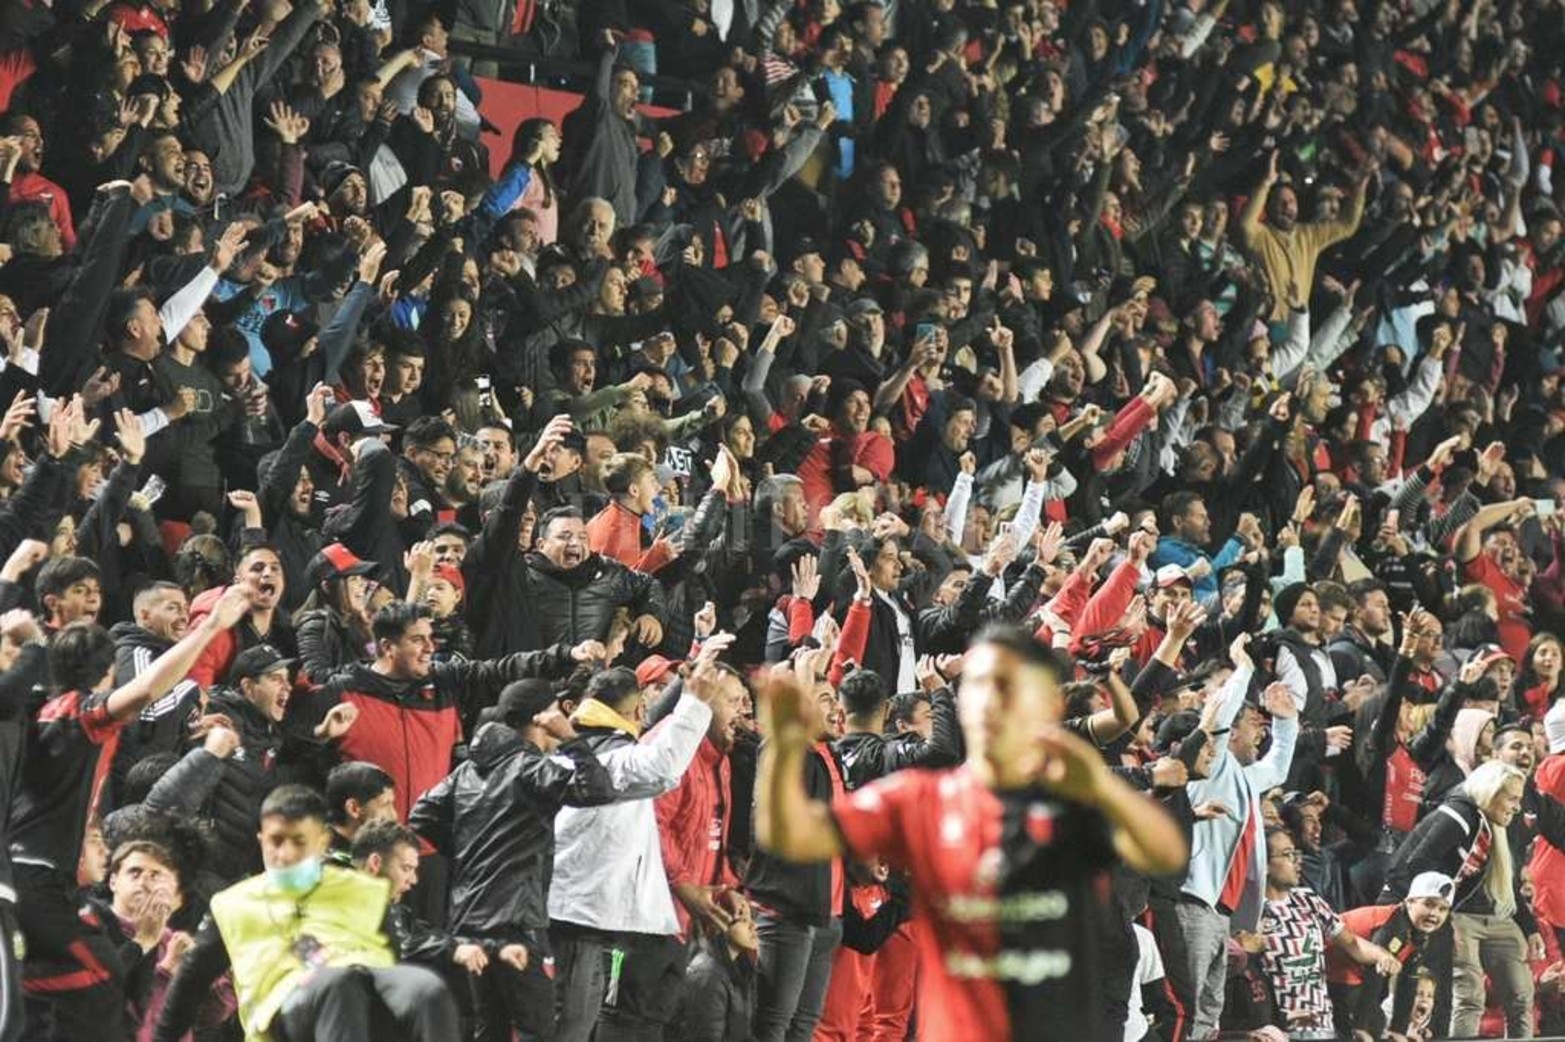 Copa Libertadores 2022 Colón - Cerro Porteño 
Final del segundo tiempo y los festejos de Colón